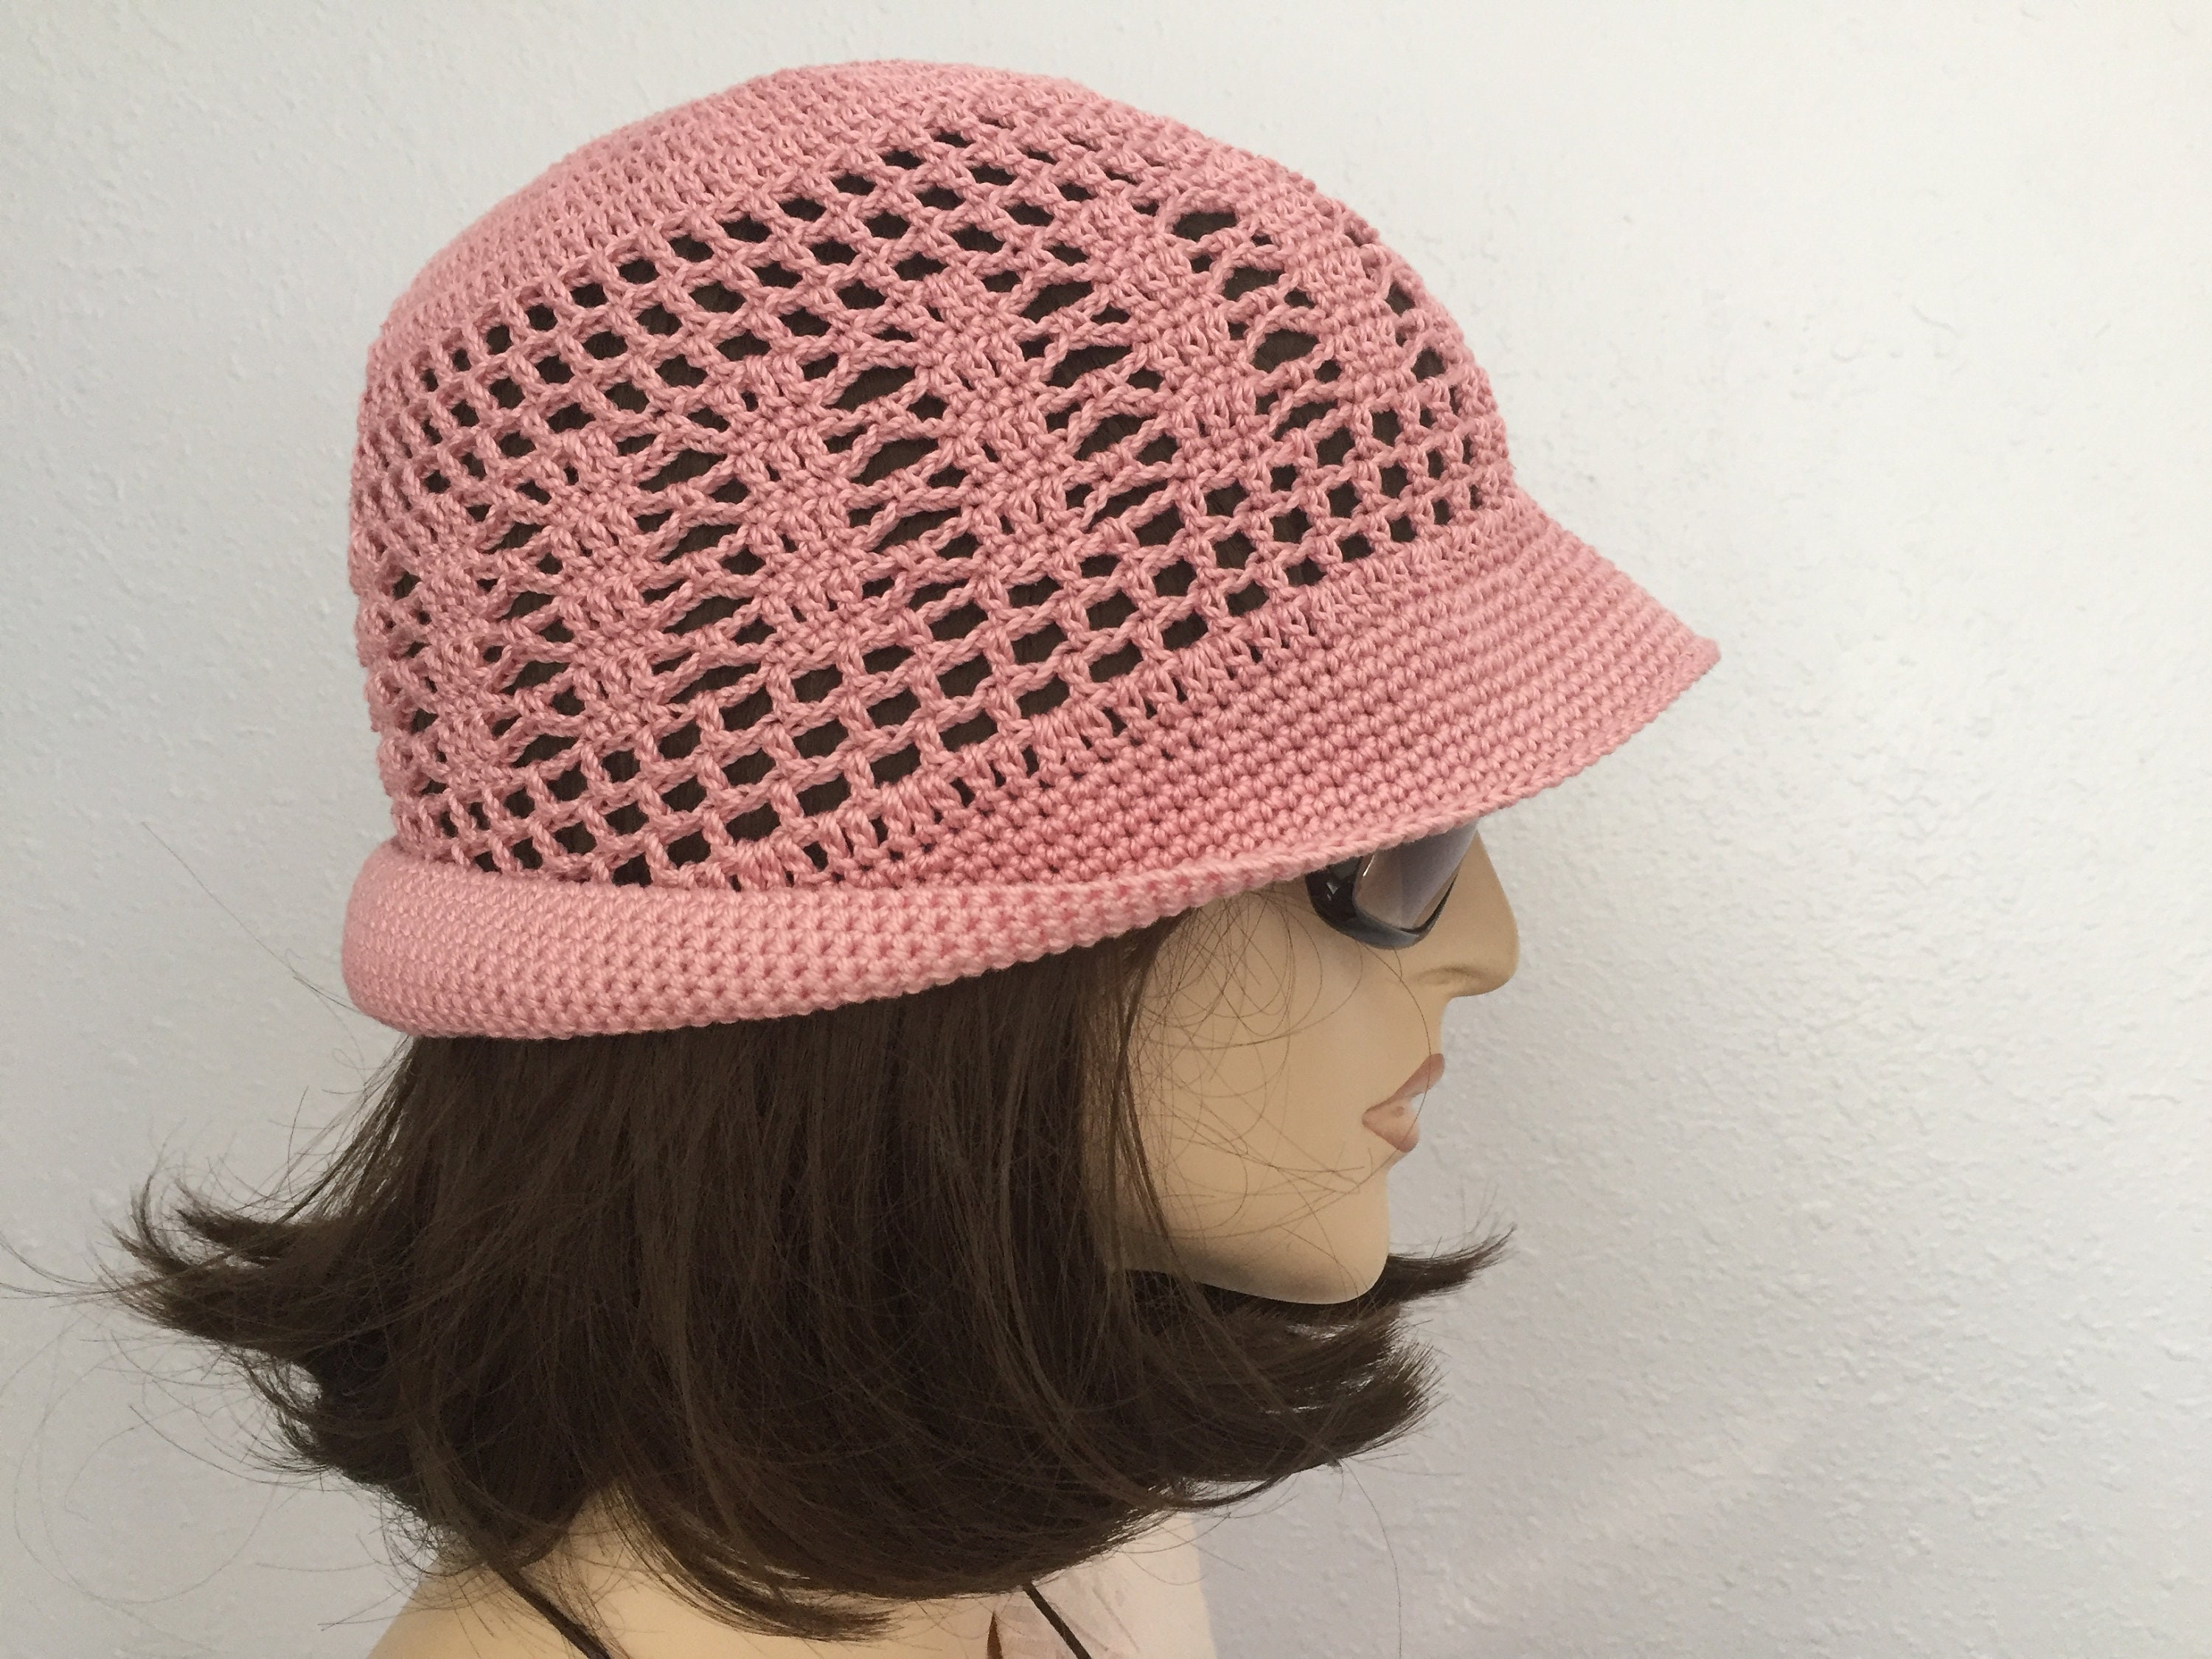 Ladies Crochet Brim Toyo Straw/Canvas Bucket Hat summer beach garden pink black 